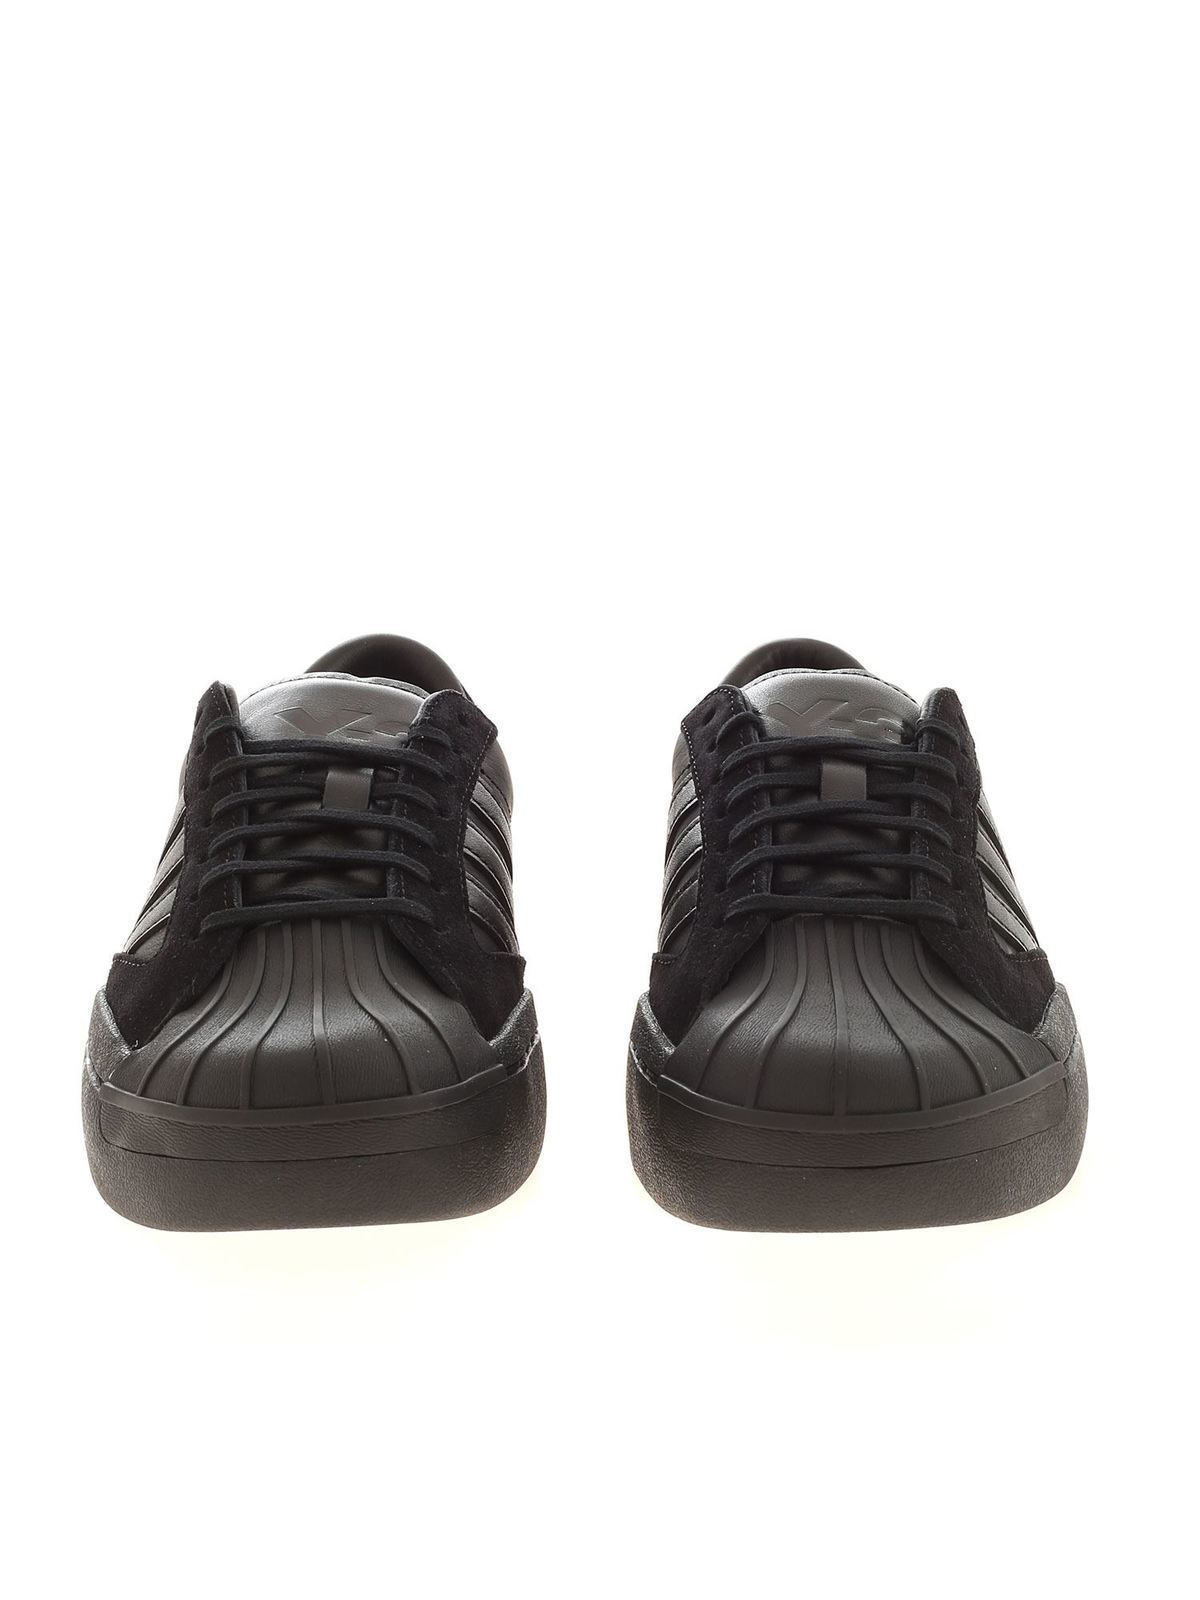 y3 black sneakers